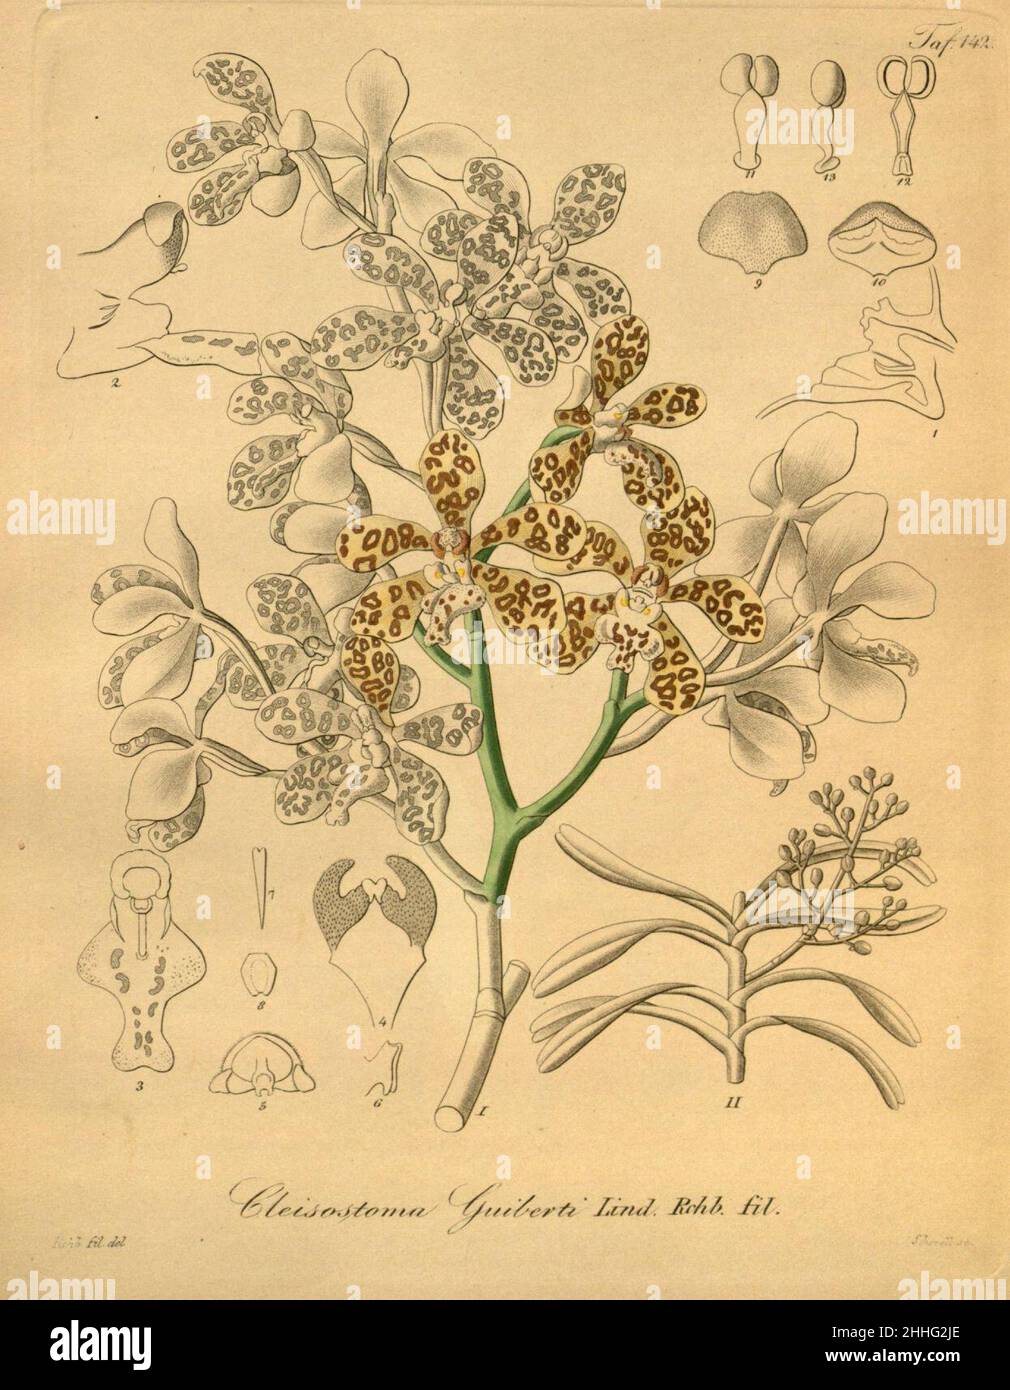 Staurochilus guibertii (as Cleisostoma guibertii) - Xenia 2 pl 142. Stock Photo